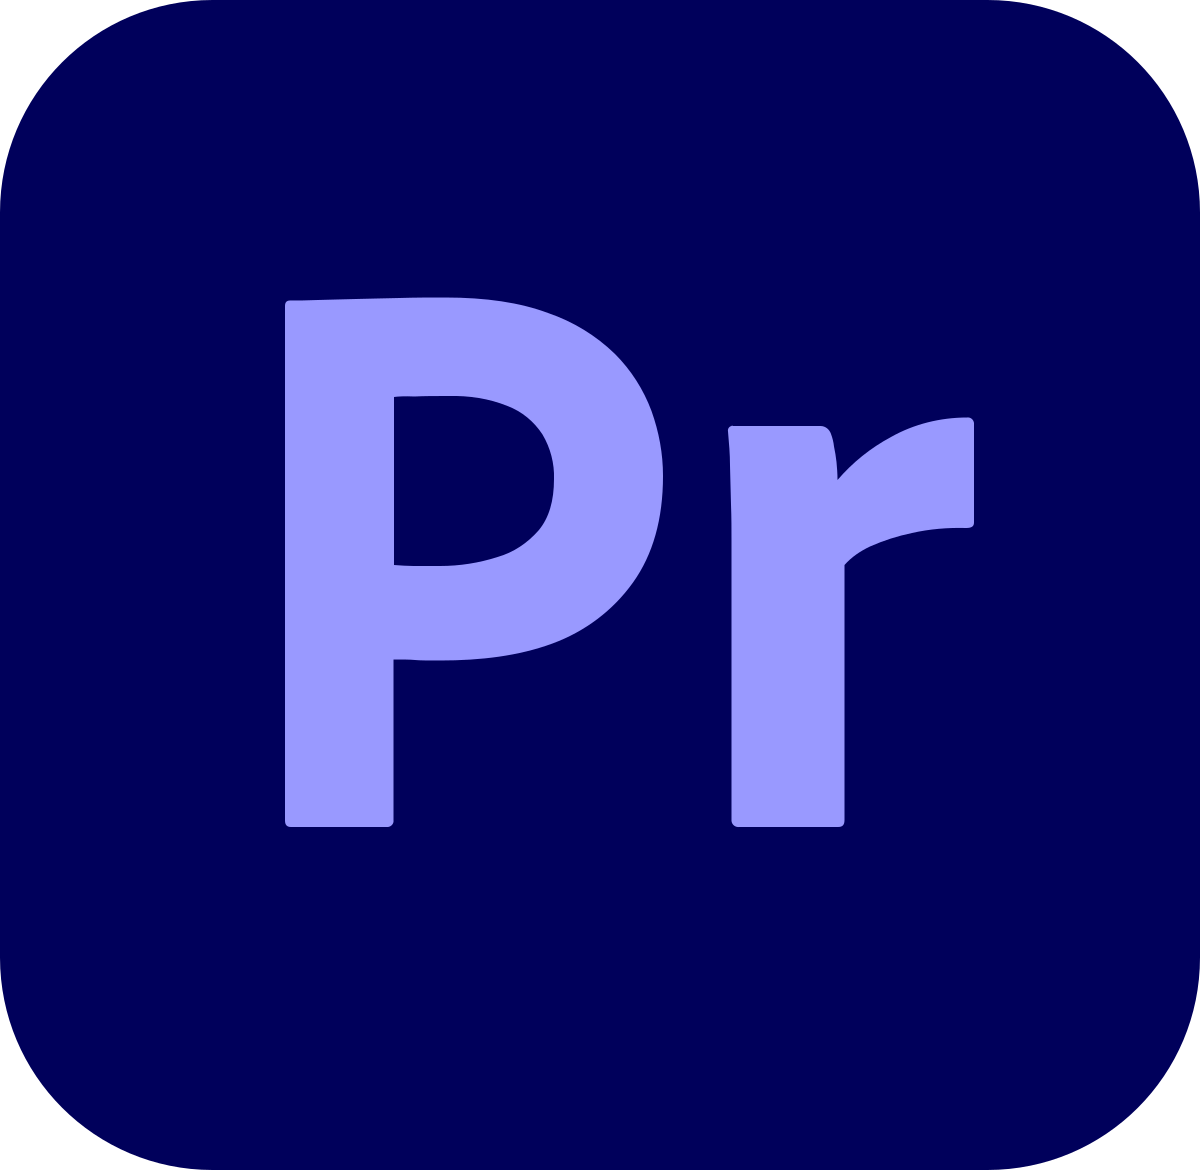 premiere-pro-logo